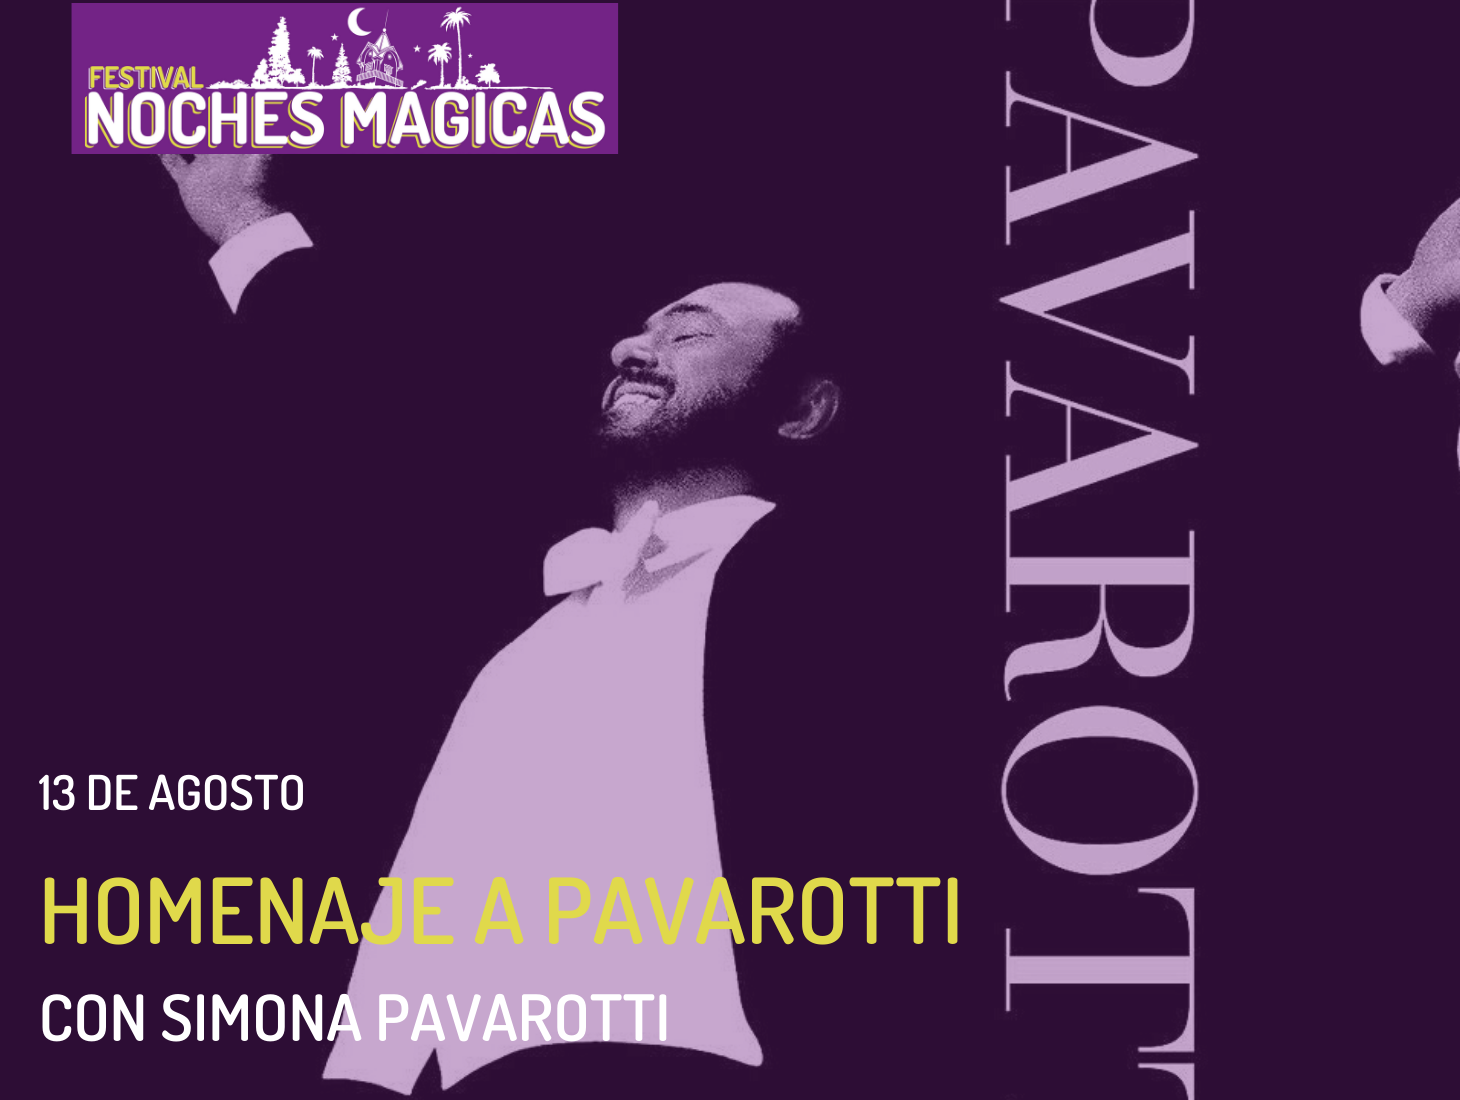 Simona Pavarotti en una actuación Homenaje a Pavarotti